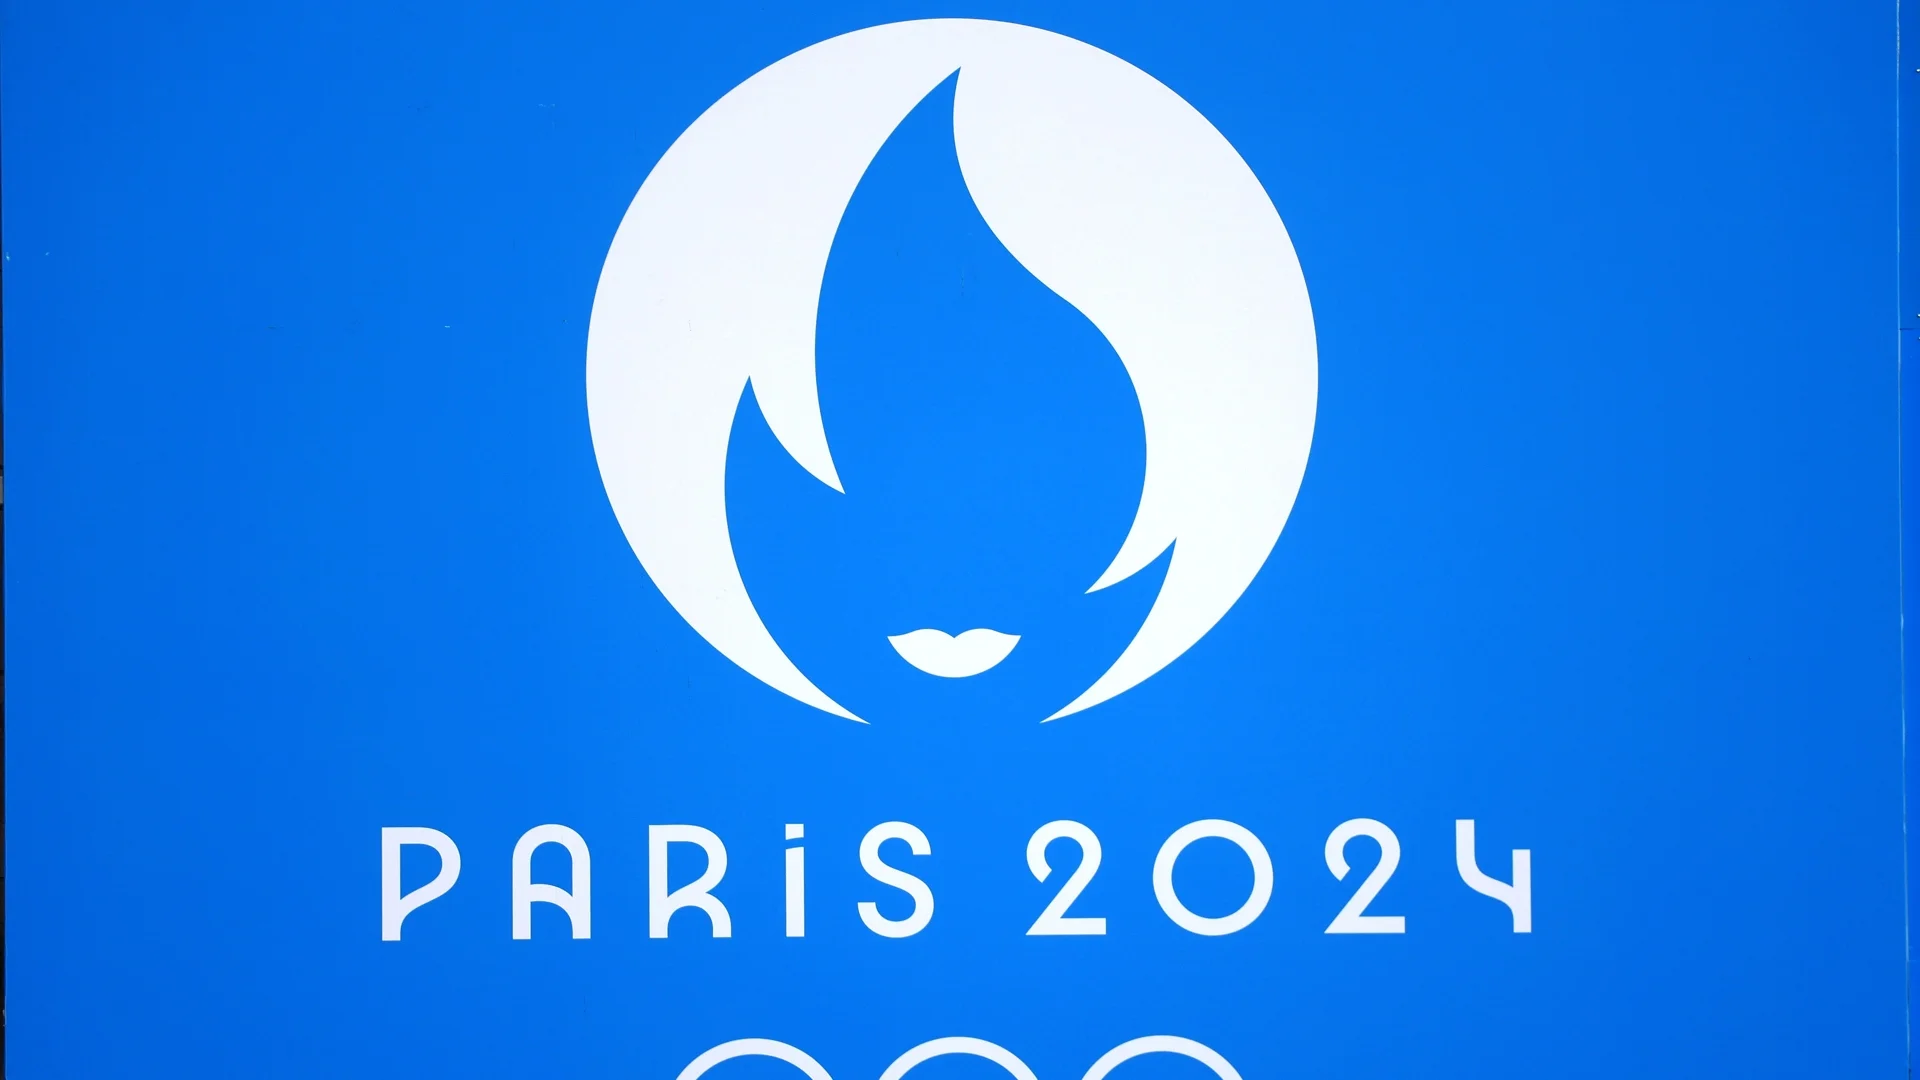 Ще използват изкуствен интелект на Олимпийските игри в Париж 2024